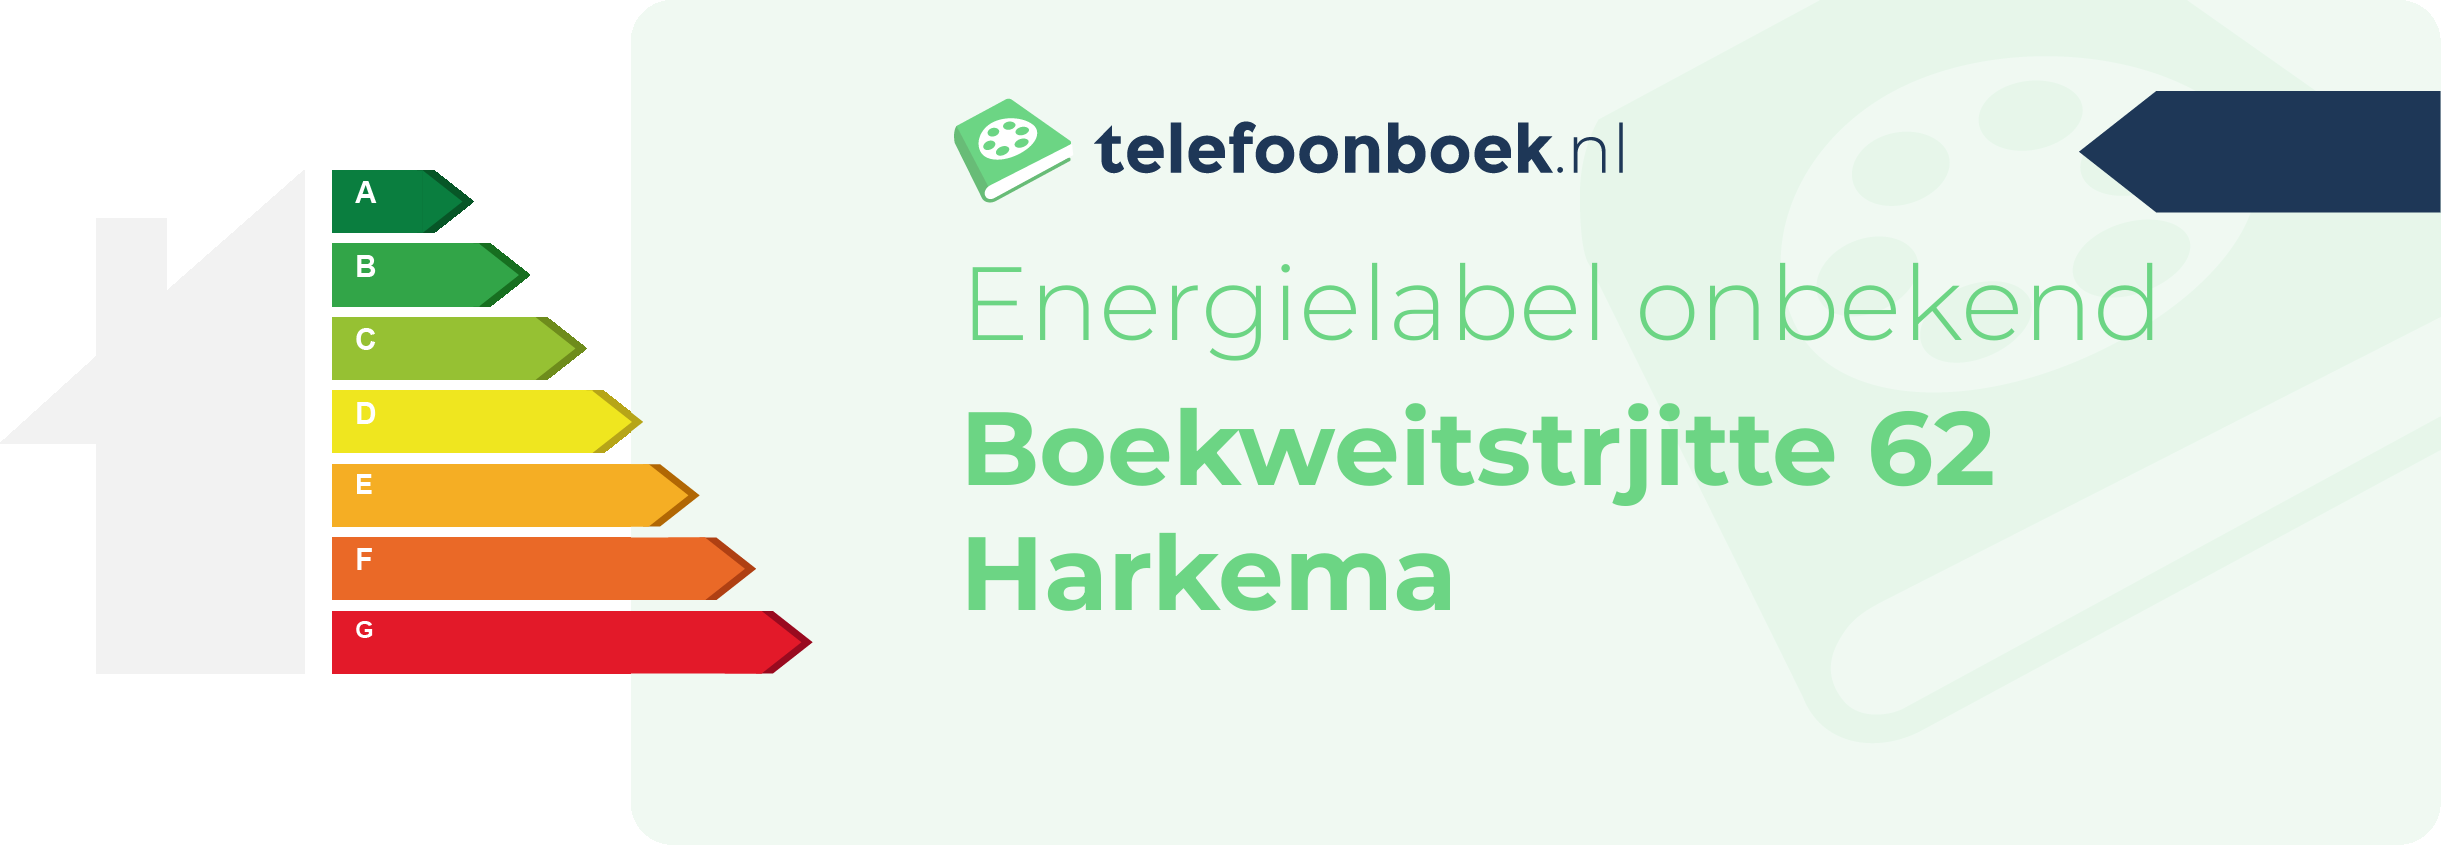 Energielabel Boekweitstrjitte 62 Harkema